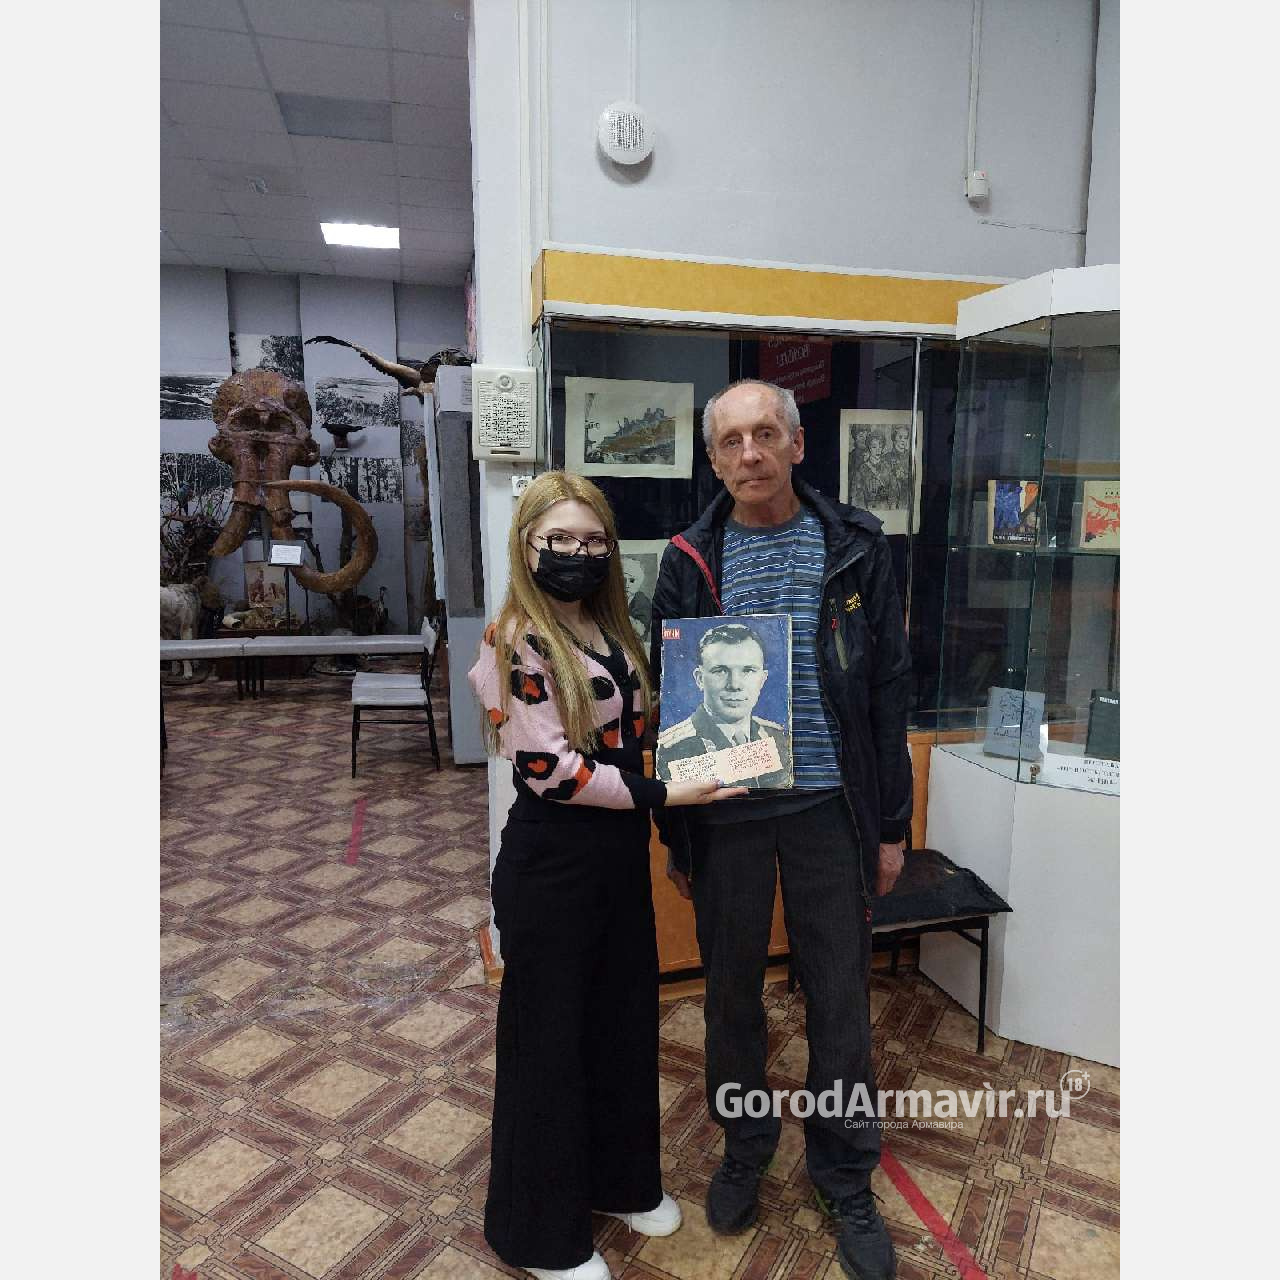 Житель Армавира в День космонавтики подарил музею журнал «Огонек» 1961 года 